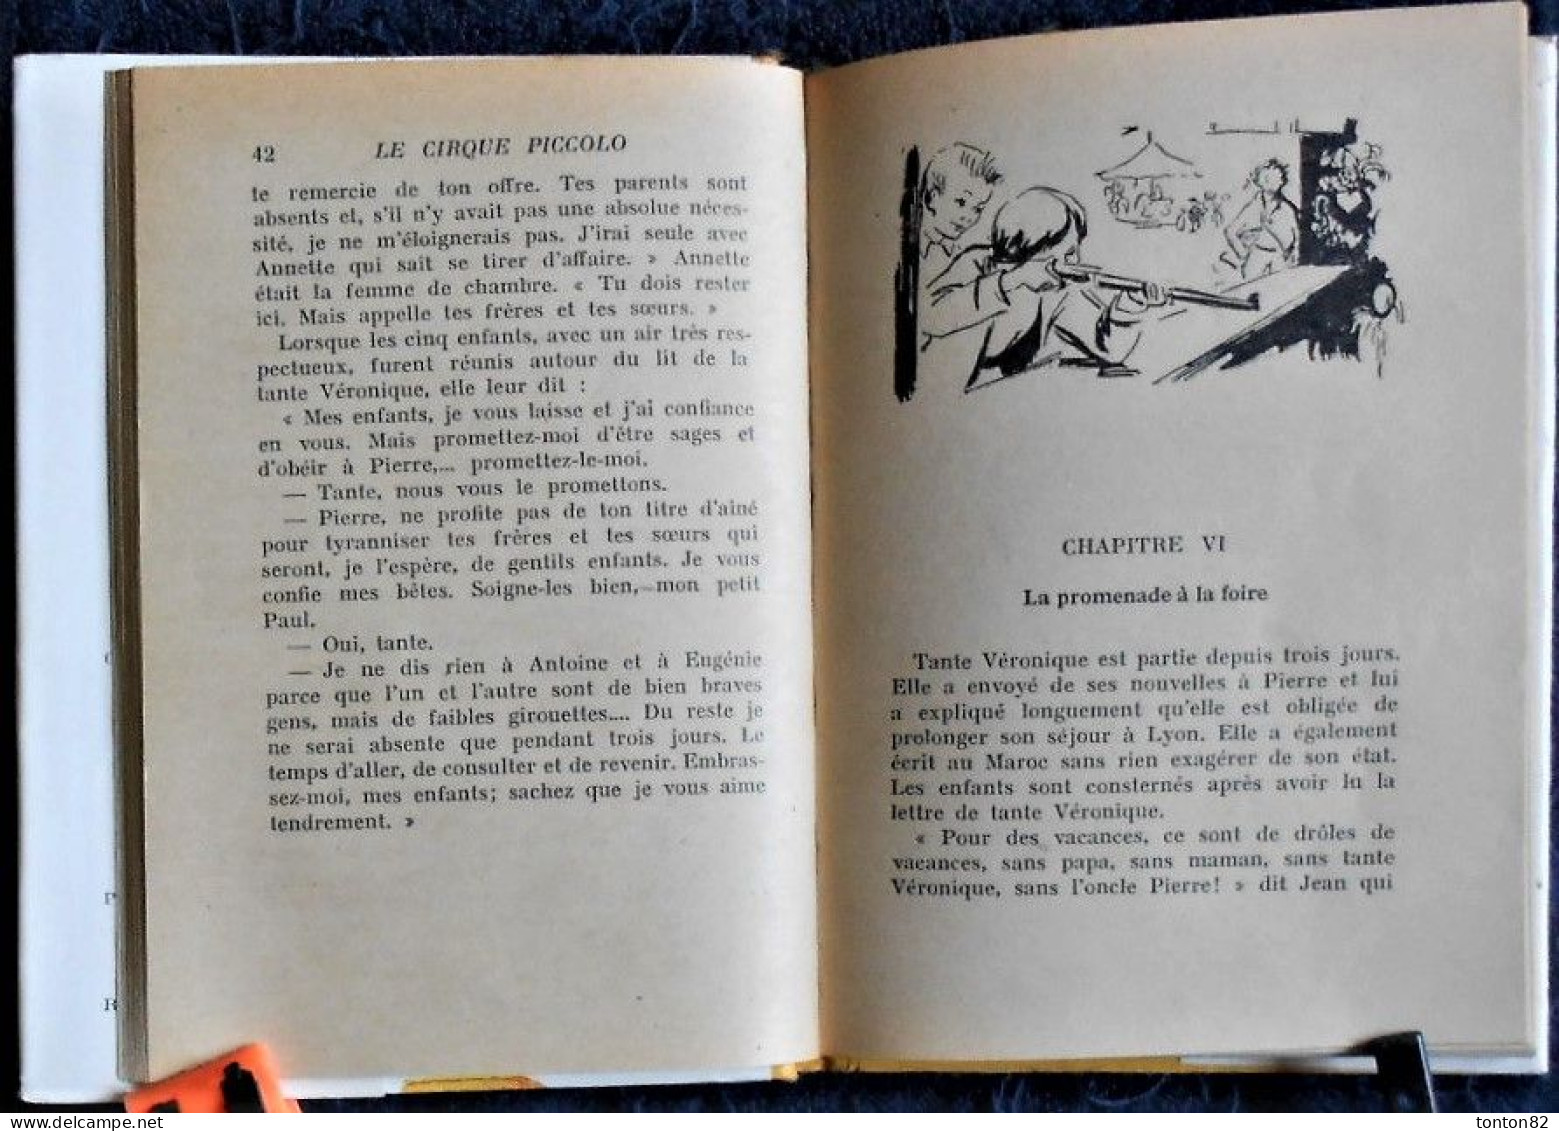 M. du Genestoux  - Le cirque Piccolo - Hachette - Bibliothèque Rose - ( 1955 ) - Avec sa jaquette .